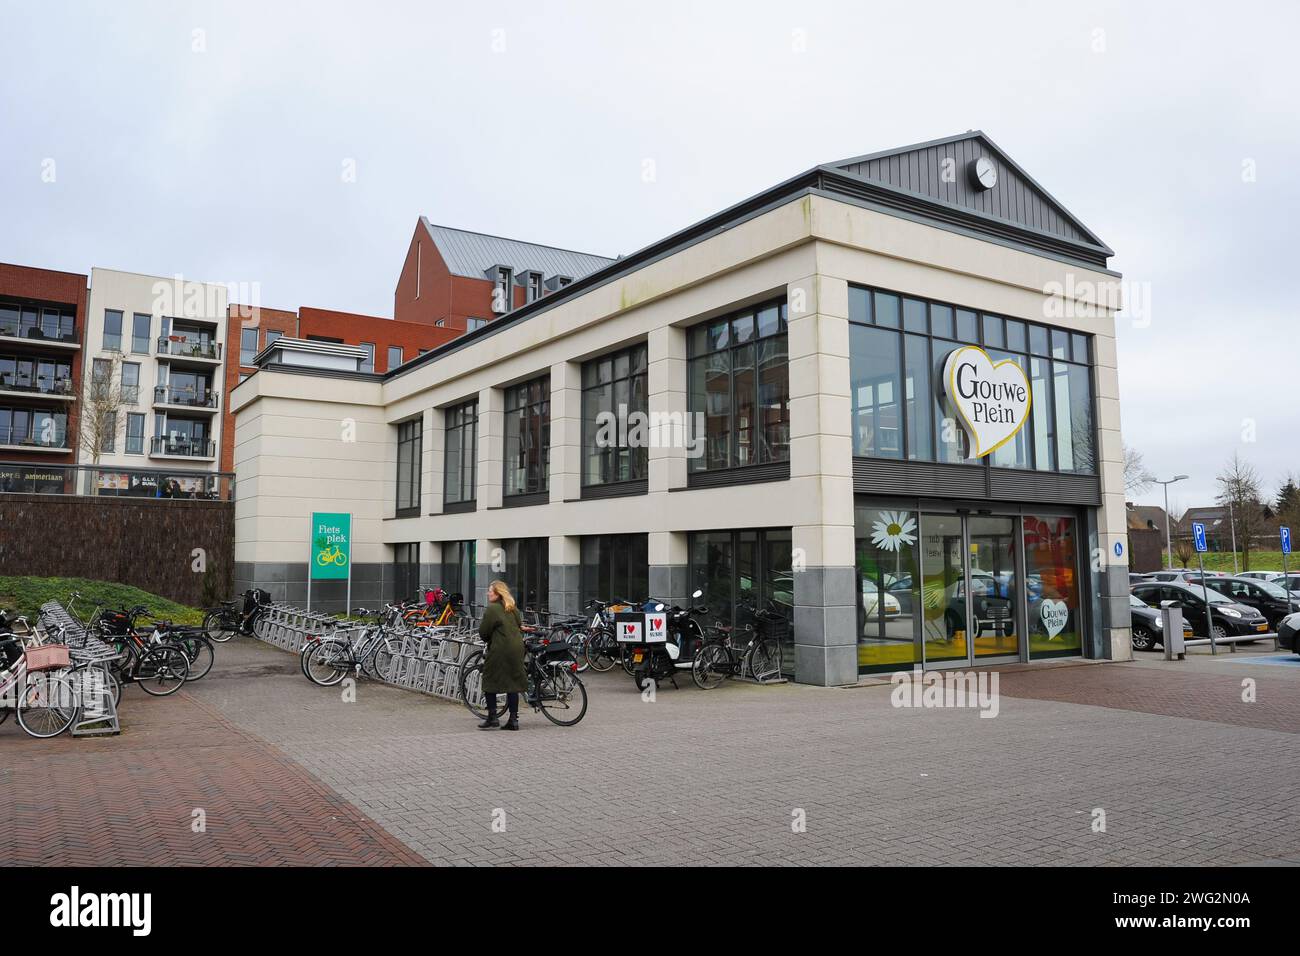 Casa d'ingresso con scale mobili del moderno centro commerciale ¨Gouweplein¨ di Waddinxveen, Paesi Bassi Foto Stock